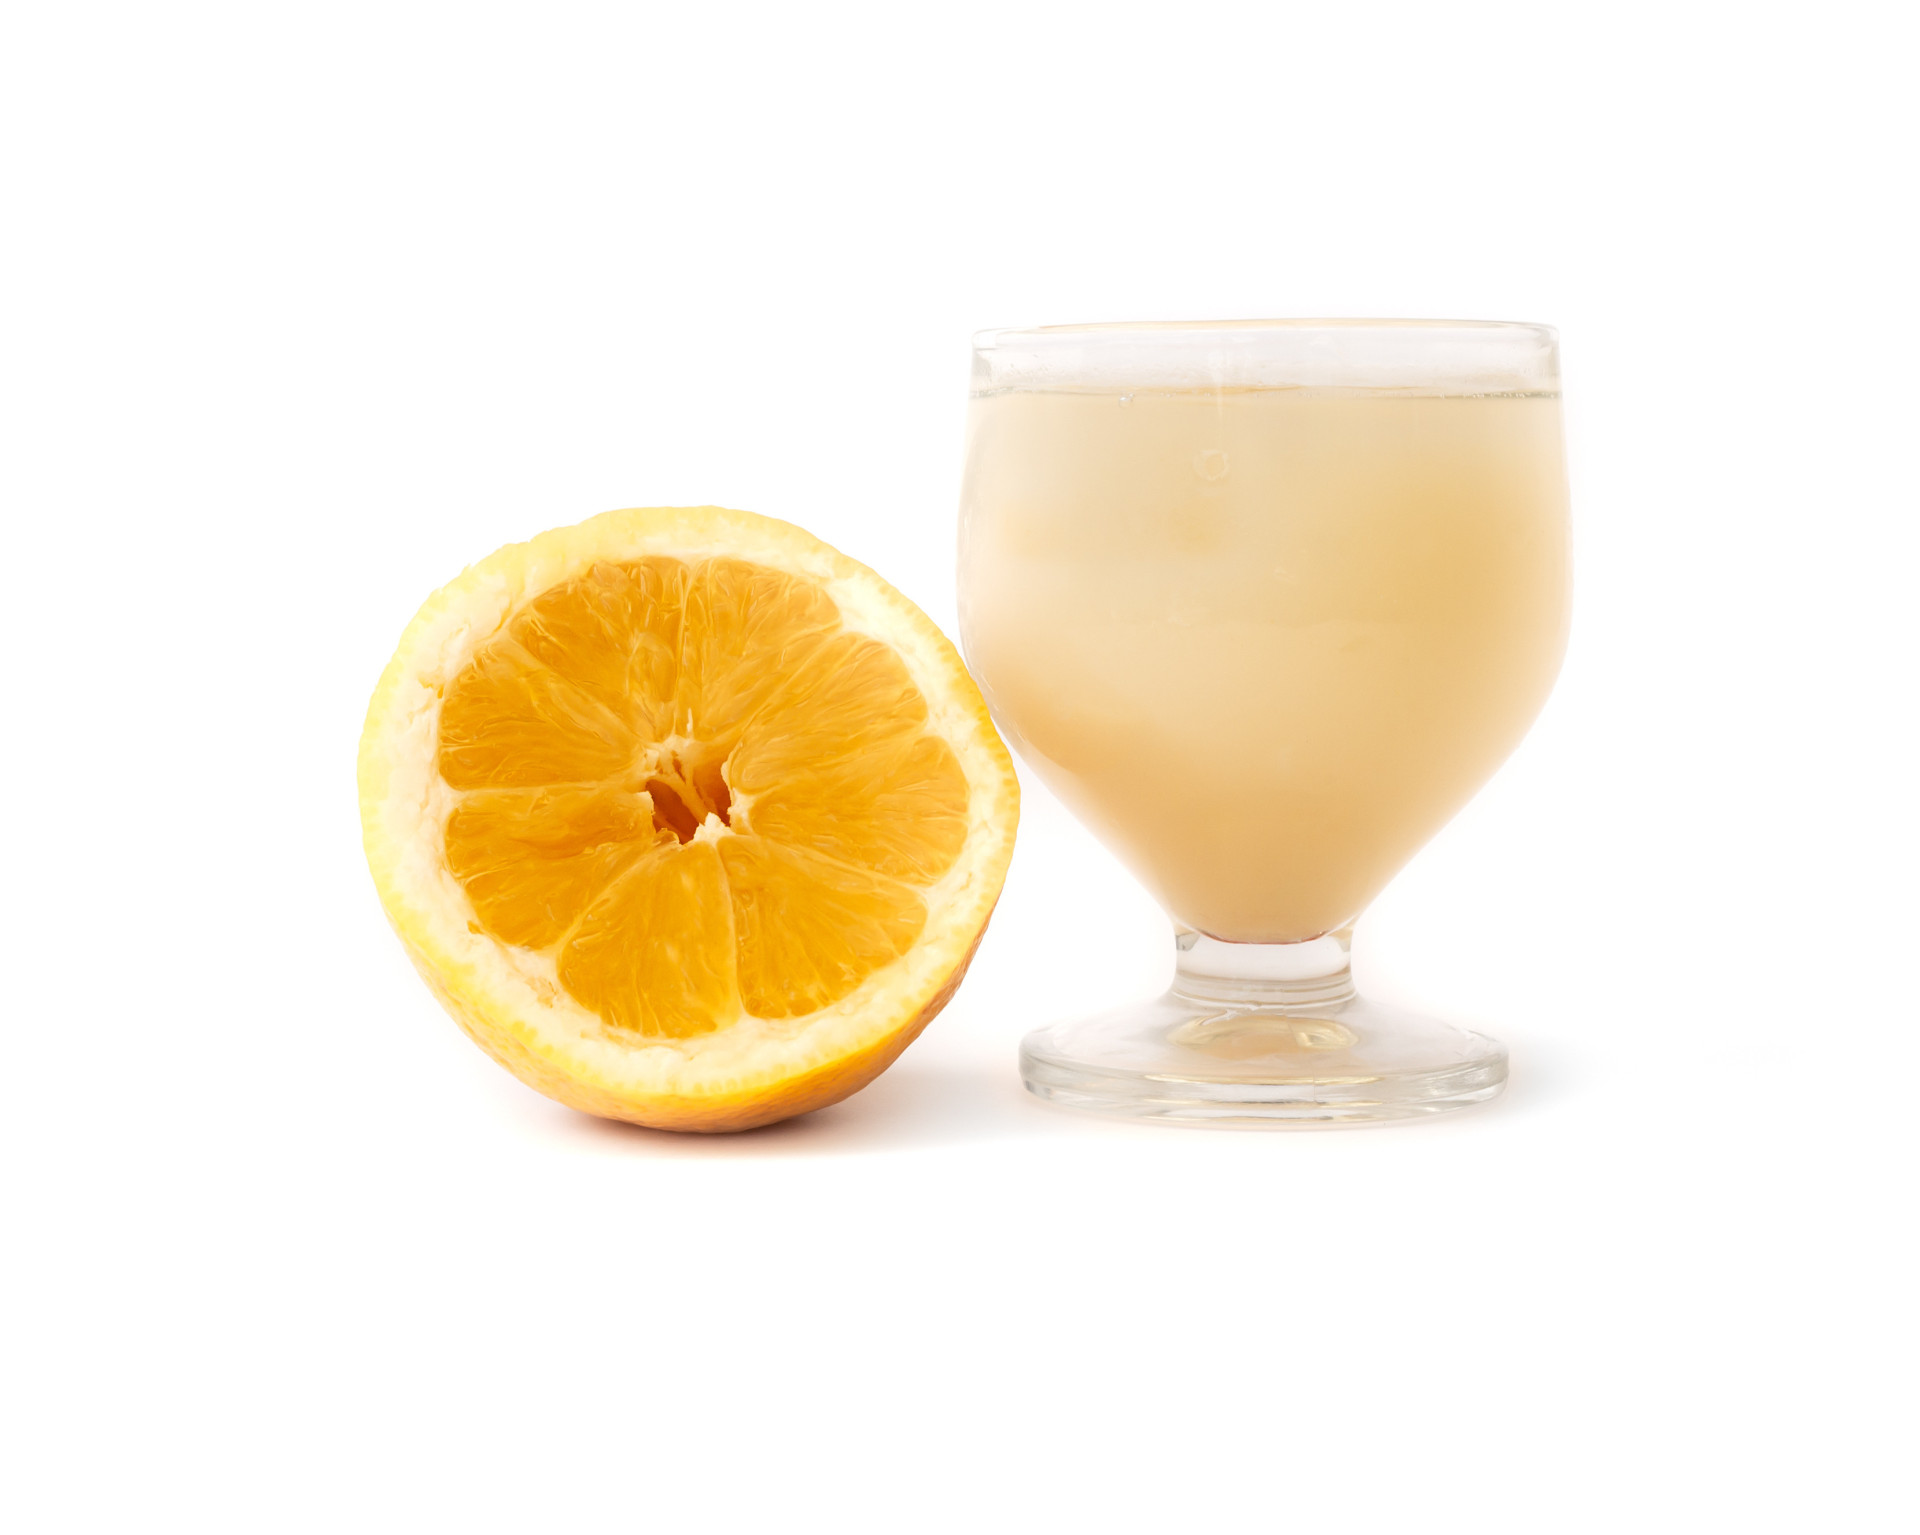 <p>Ingrédients: eau de vie (alcool distillé obtenu à partir de canne à sucre), miel, sucre, zeste de citron, jus de citron. </p> <p>Comment servir: mixer tous les ingrédients et bien mélanger! Vous pouvez utiliser d'autres jus de fruits, tels que l'orange ou l'ananas, au lieu du citron traditionnel.</p>   <p>Mettez tout en oeuvre pour <a href="https://fr.starsinsider.com/health/355390/adieu-la-gueule-de-bois-grace-a-nos-conseils-pratiques">éviter la gueule de bois</a>!</p>